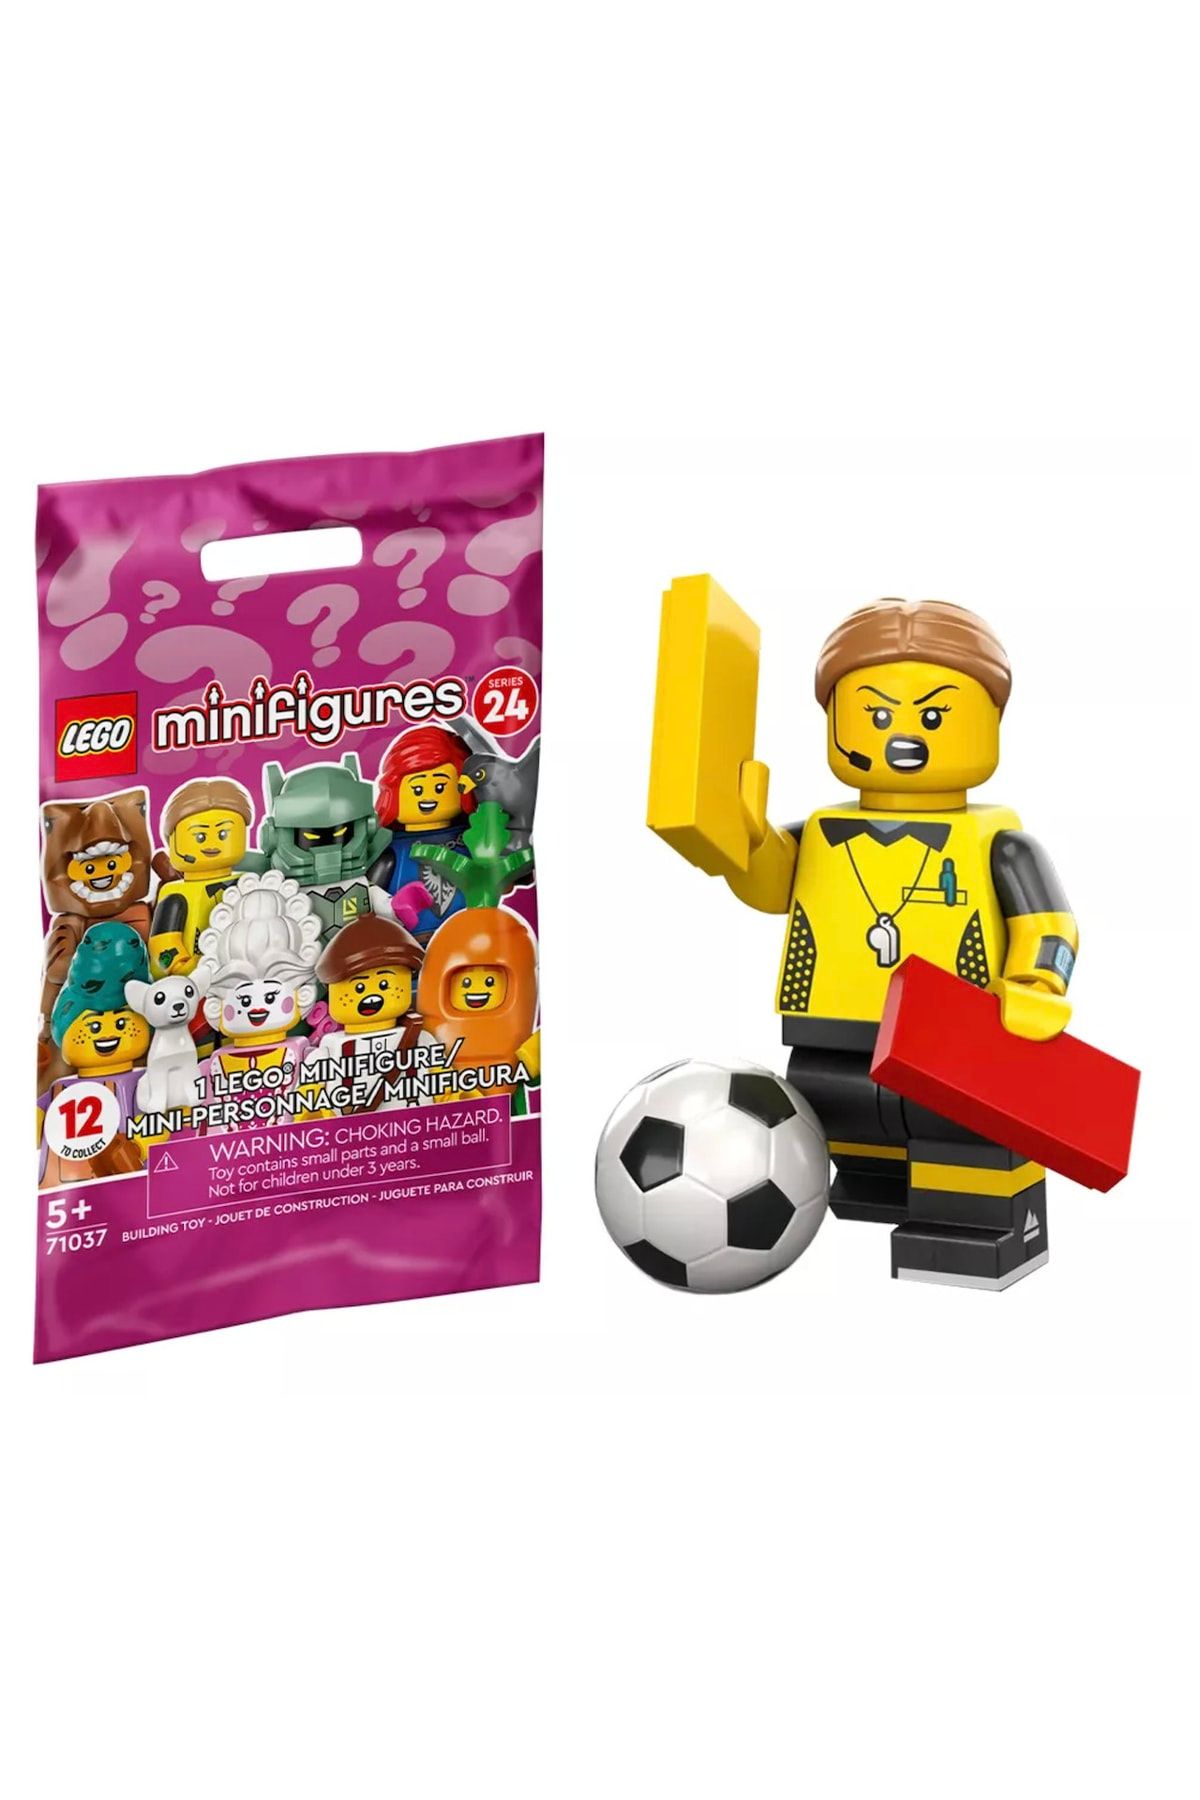 LEGO 71037 Minifigure Series 24 - 1 Football Referee - Trendyol